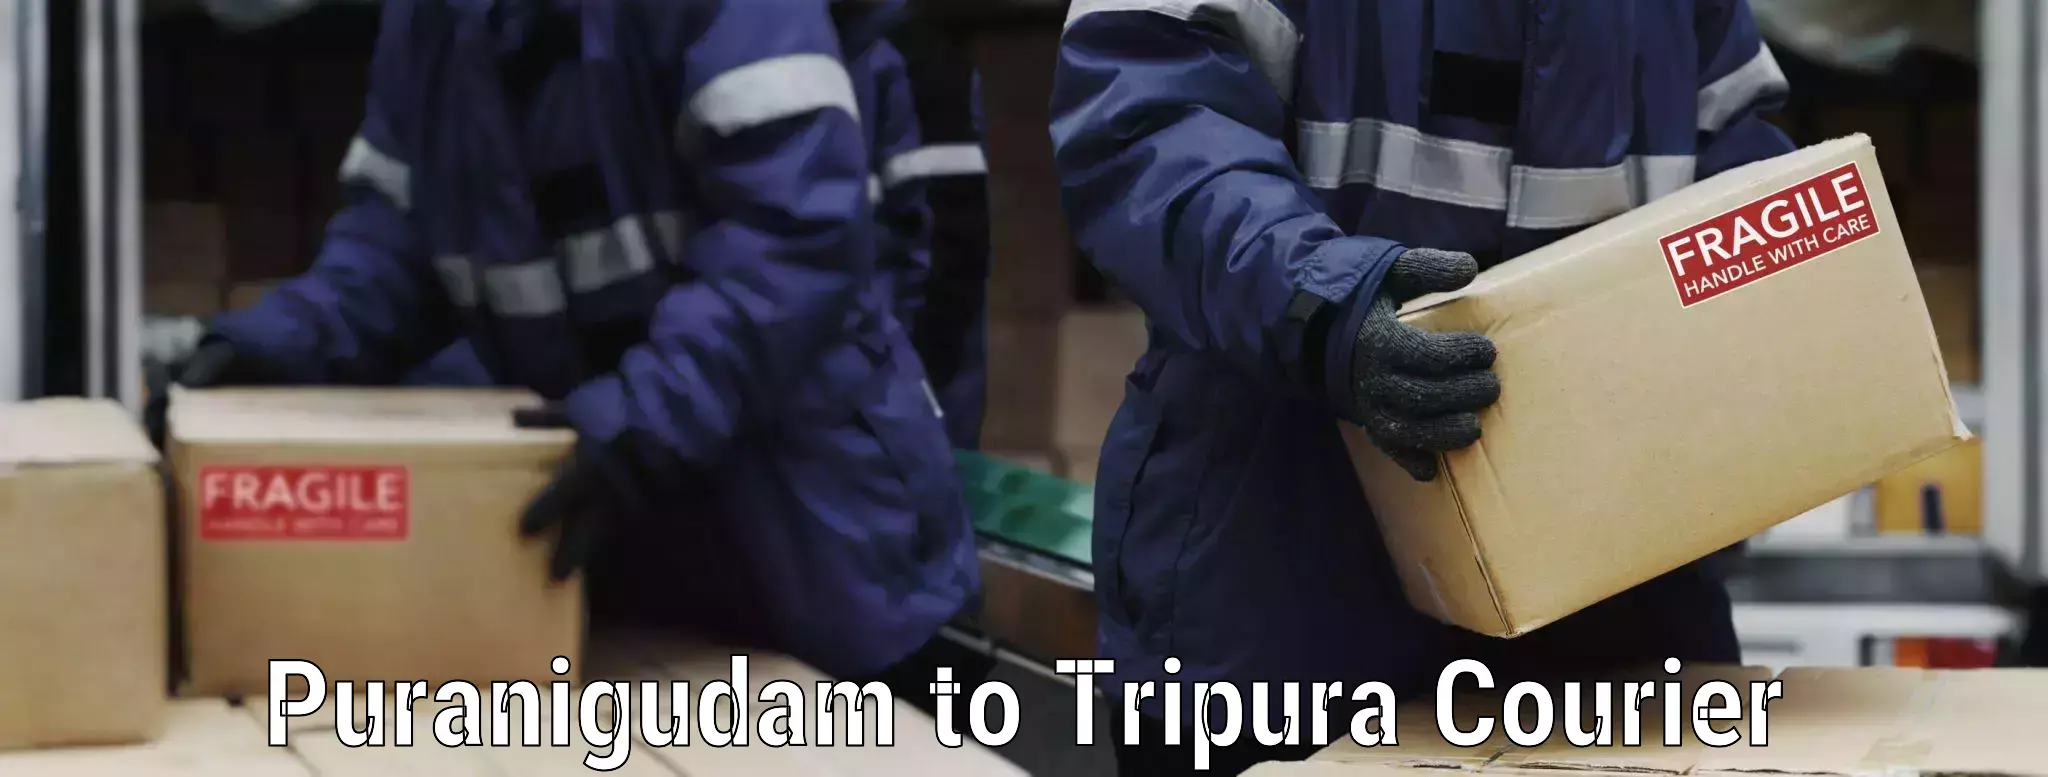 Professional furniture transport Puranigudam to Udaipur Tripura